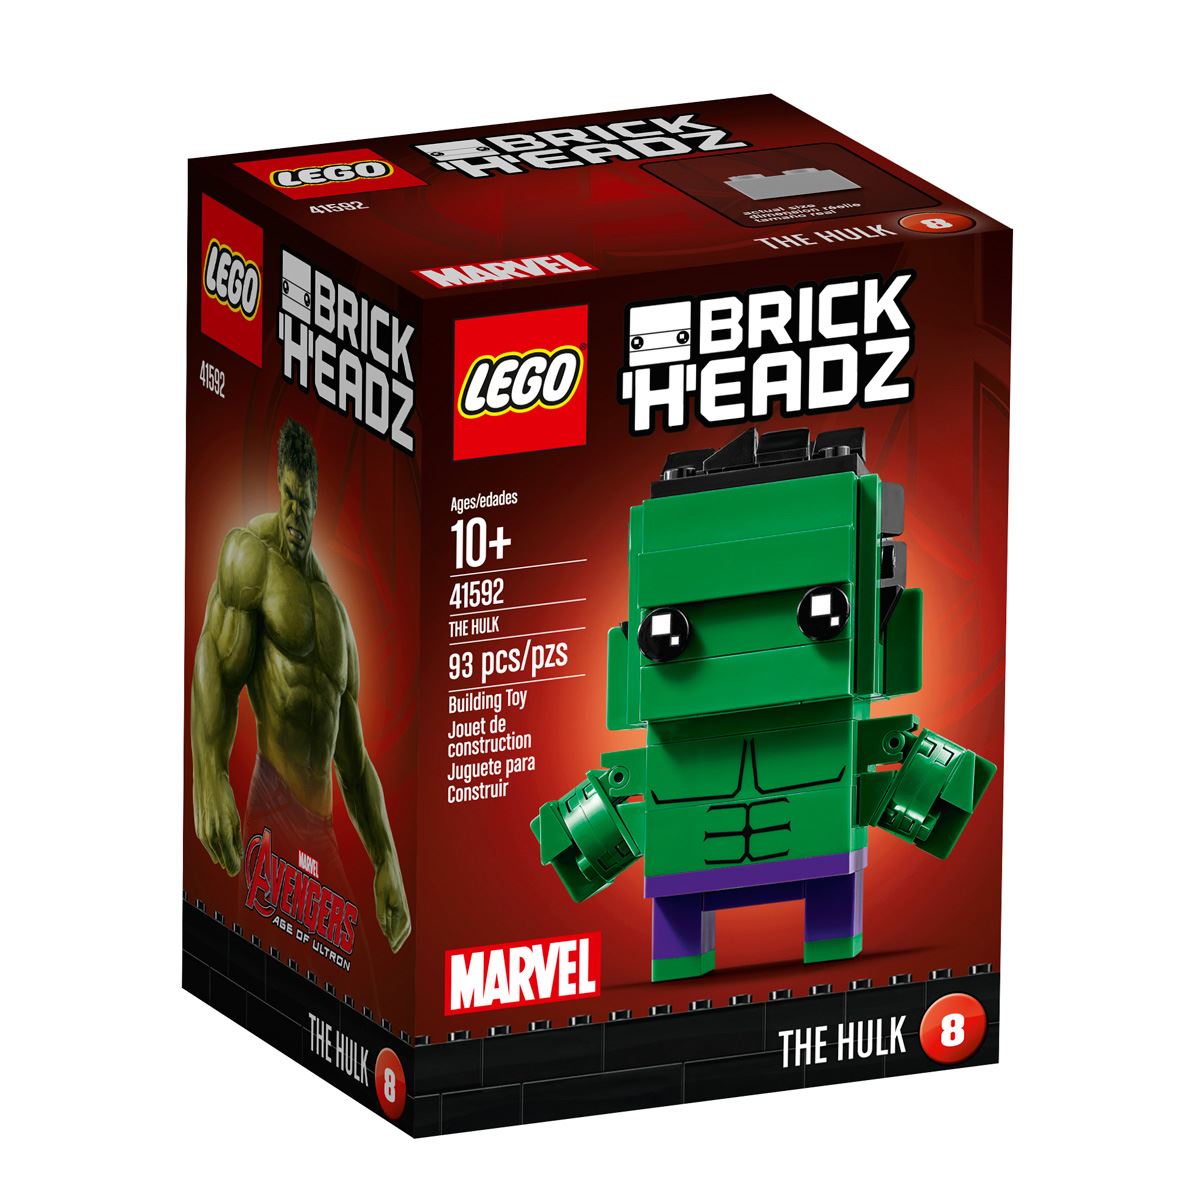 Brickheadz The Hulk